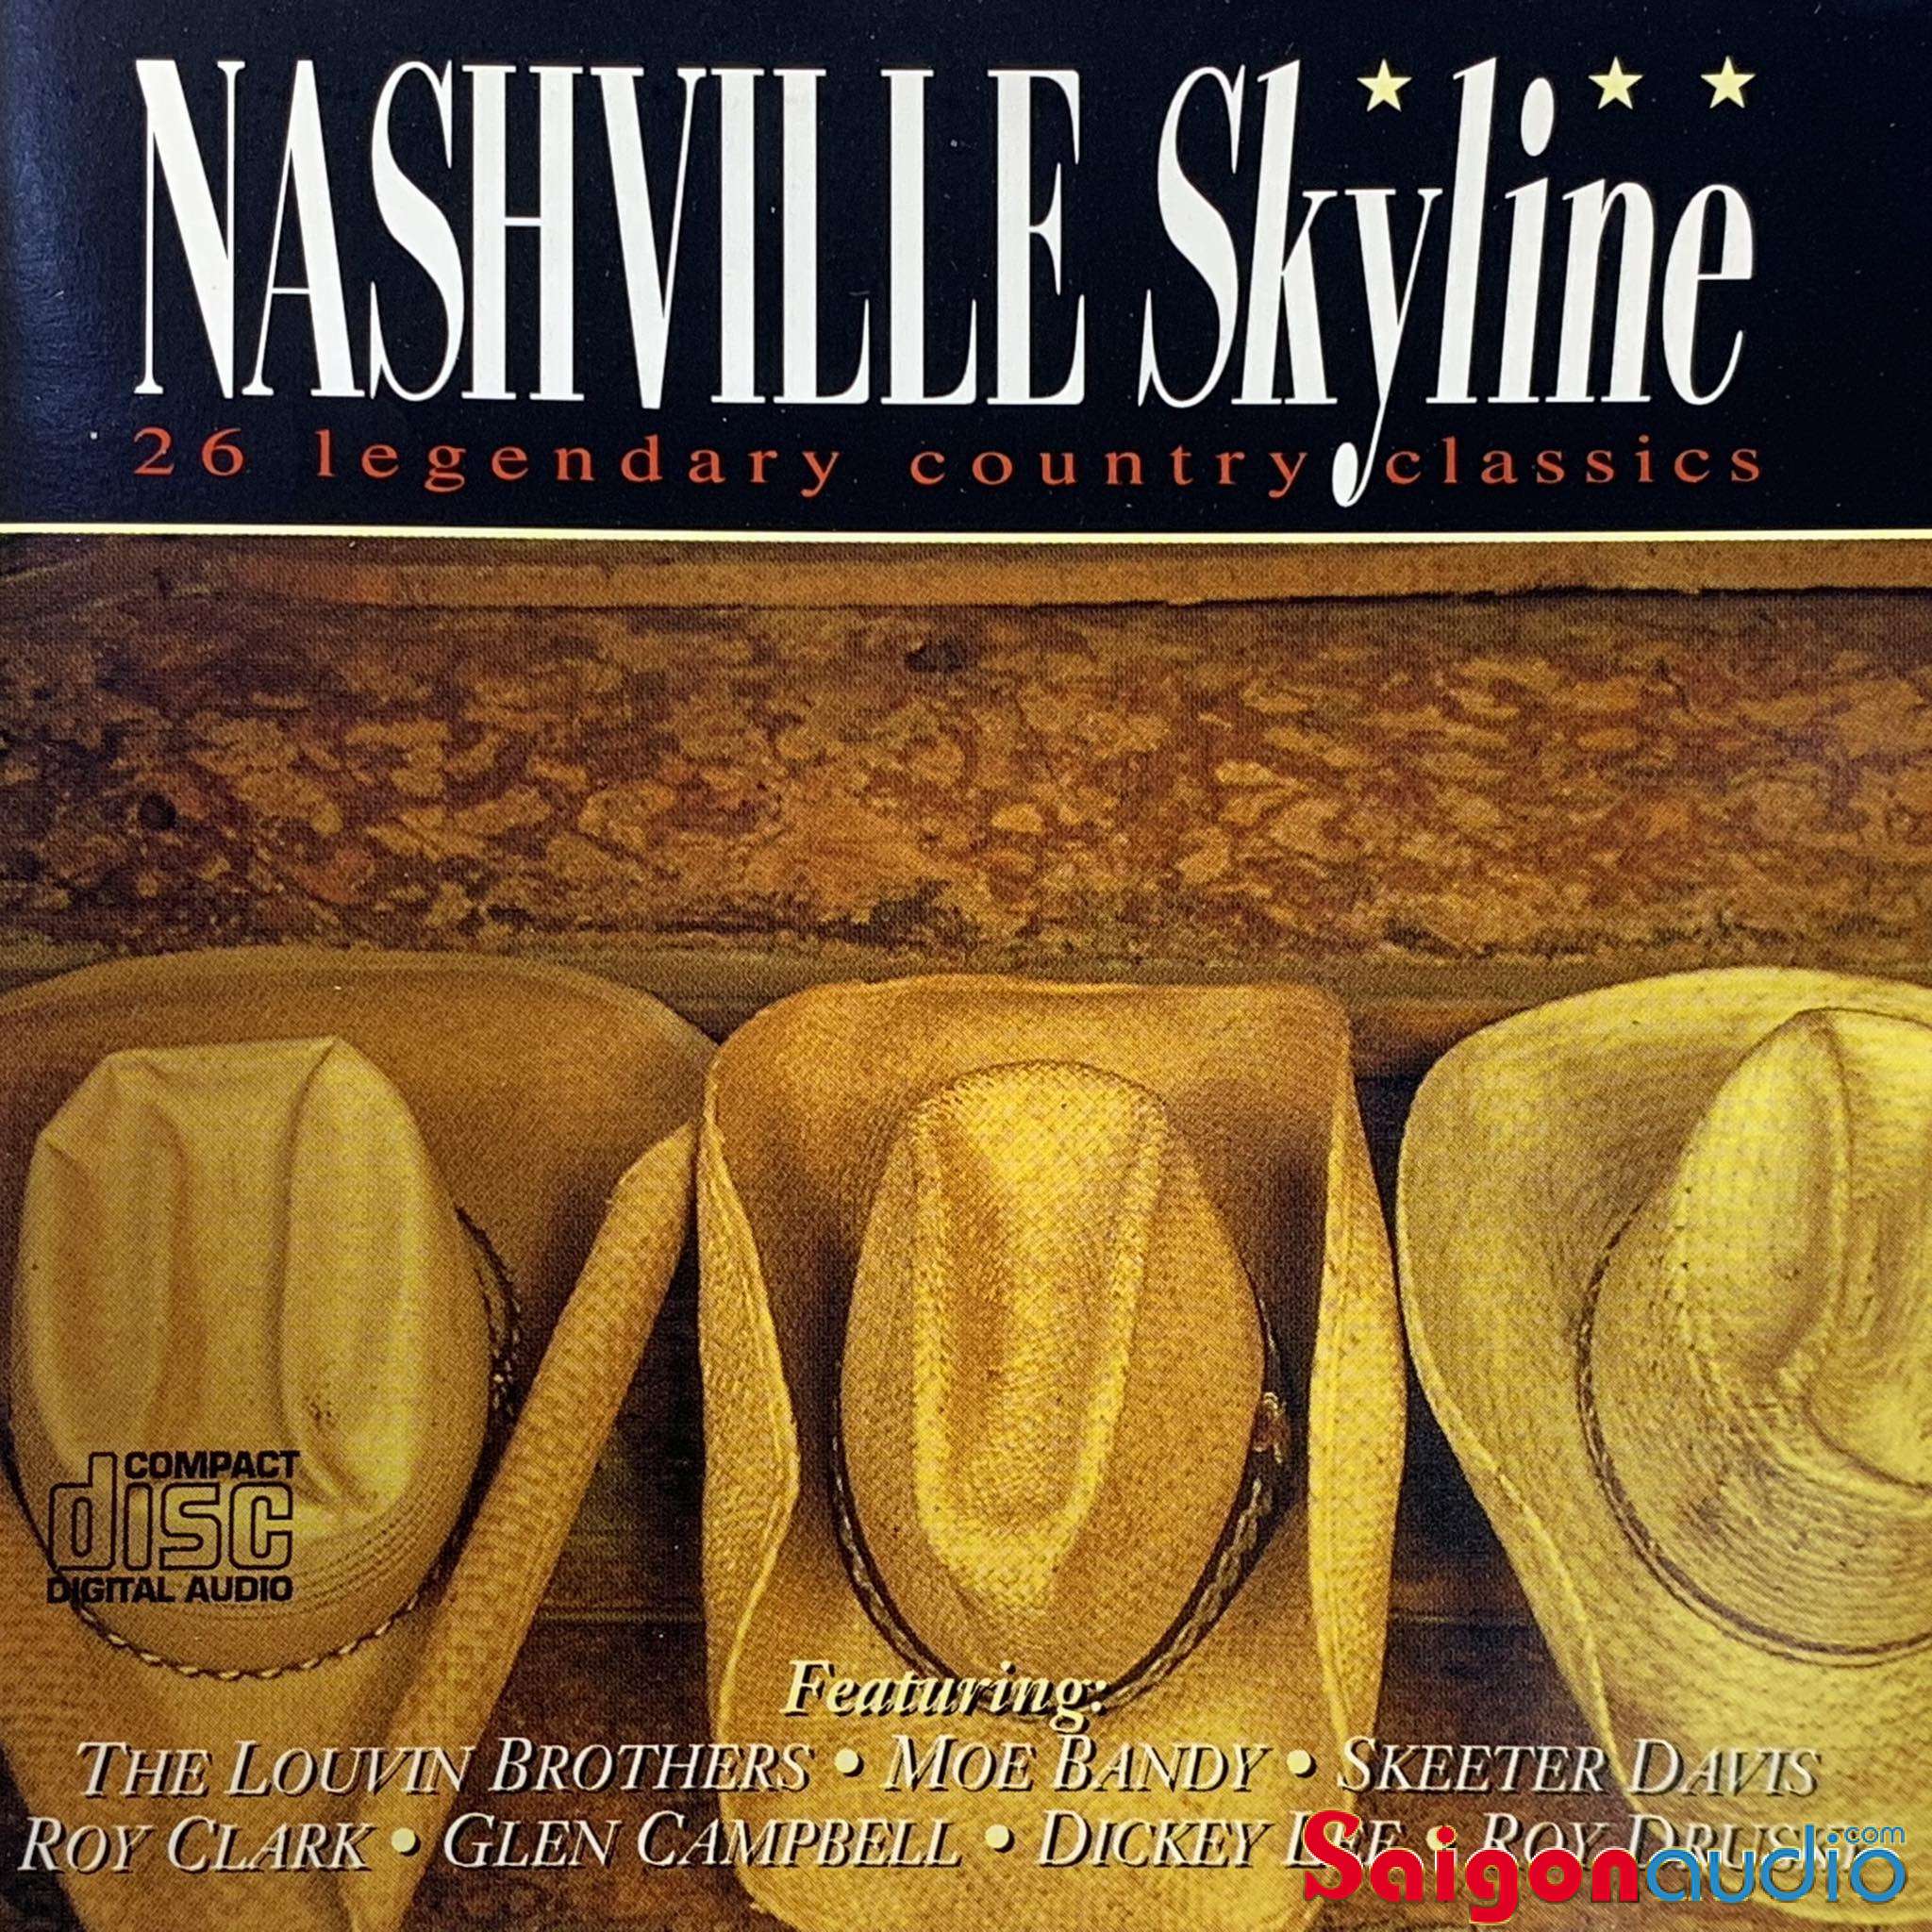 Đĩa CD gốc nhạc country Nashville Skyline - 26 Legendary Country Classics (Free ship khi mua 2 đĩa CD cùng hoặc khác loại)